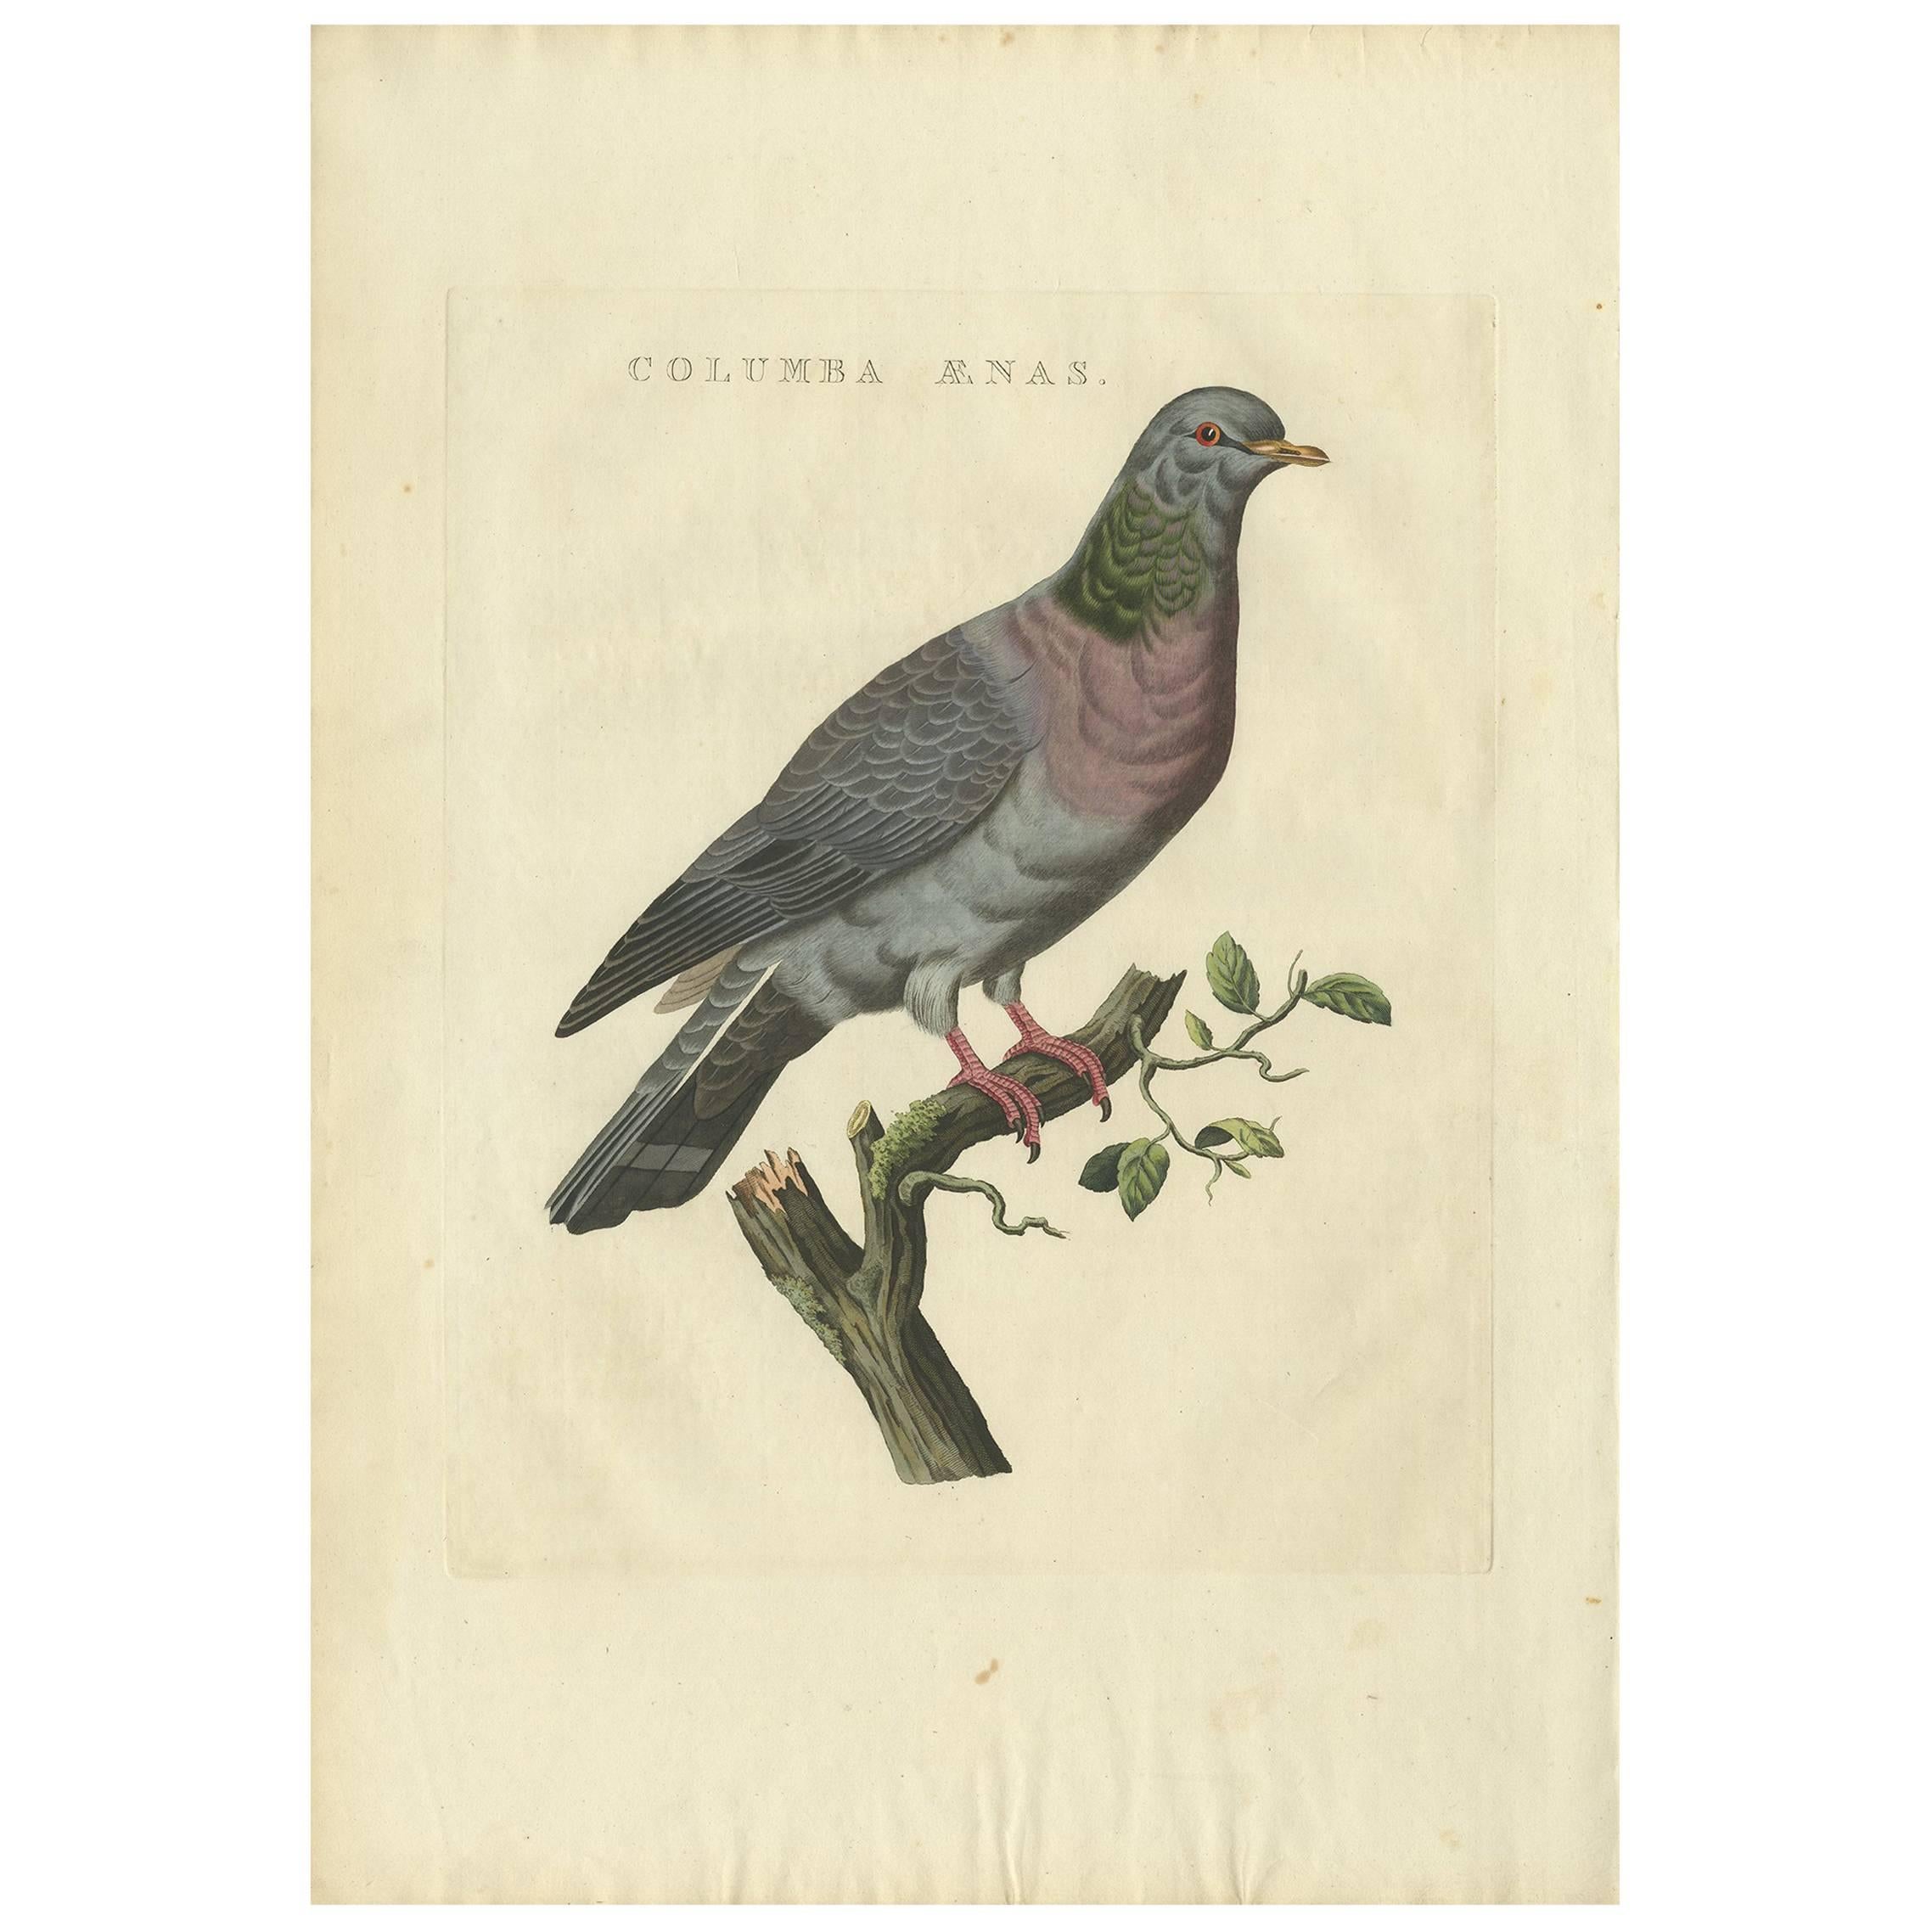 Impression oiseau ancienne d'une colombe en stock par Sepp & Nozeman, 1829